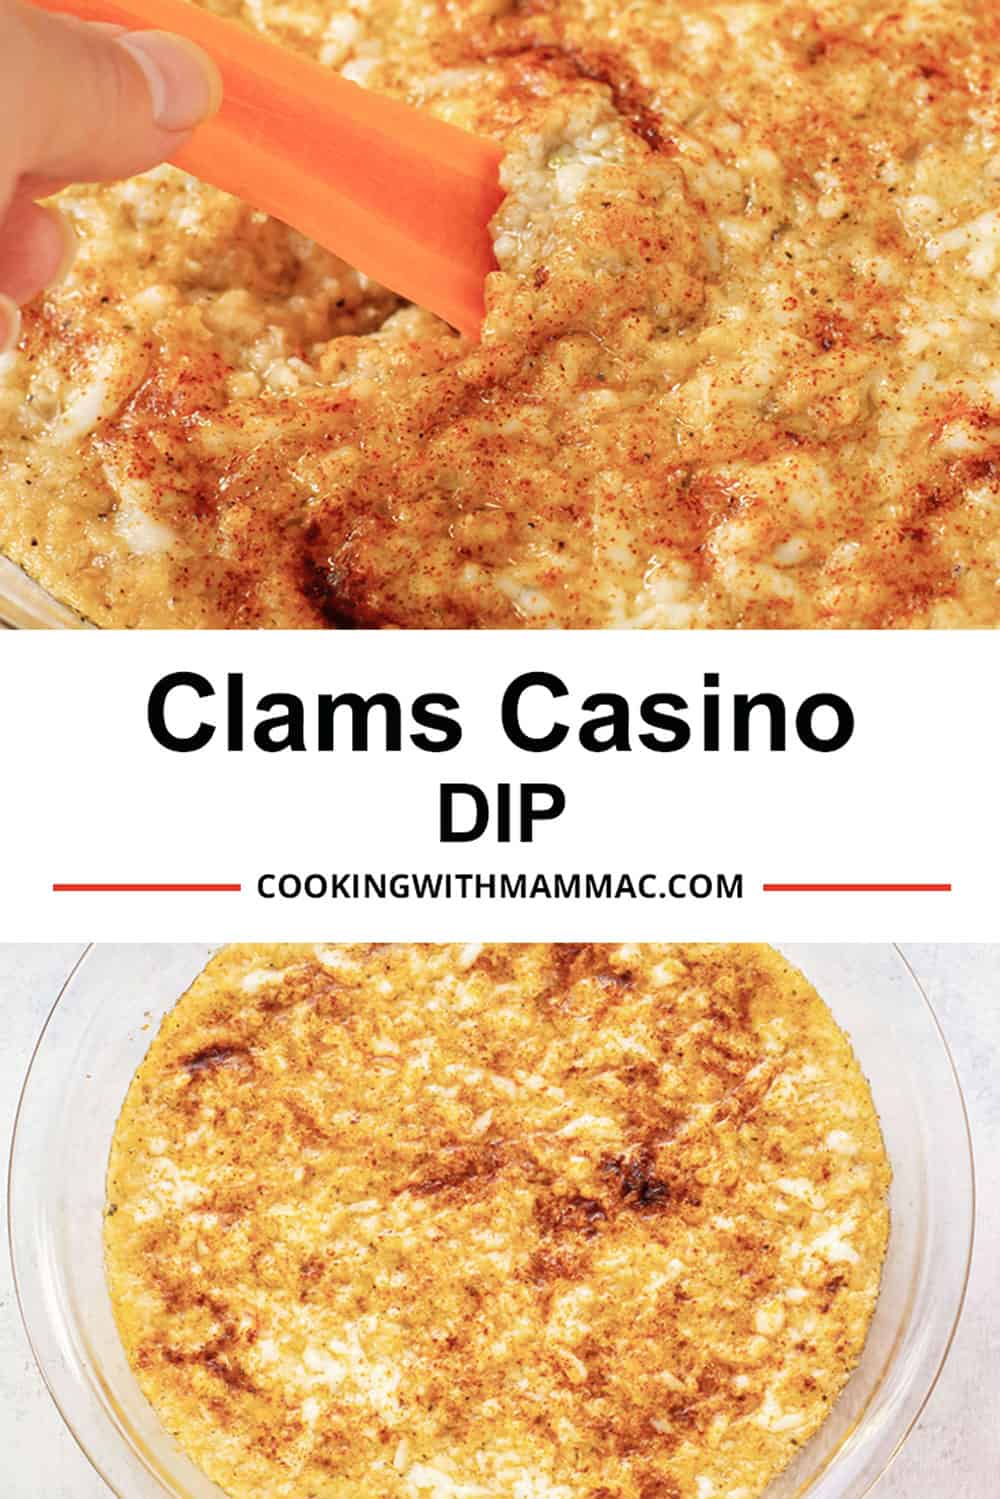 clams casino dip serious eats